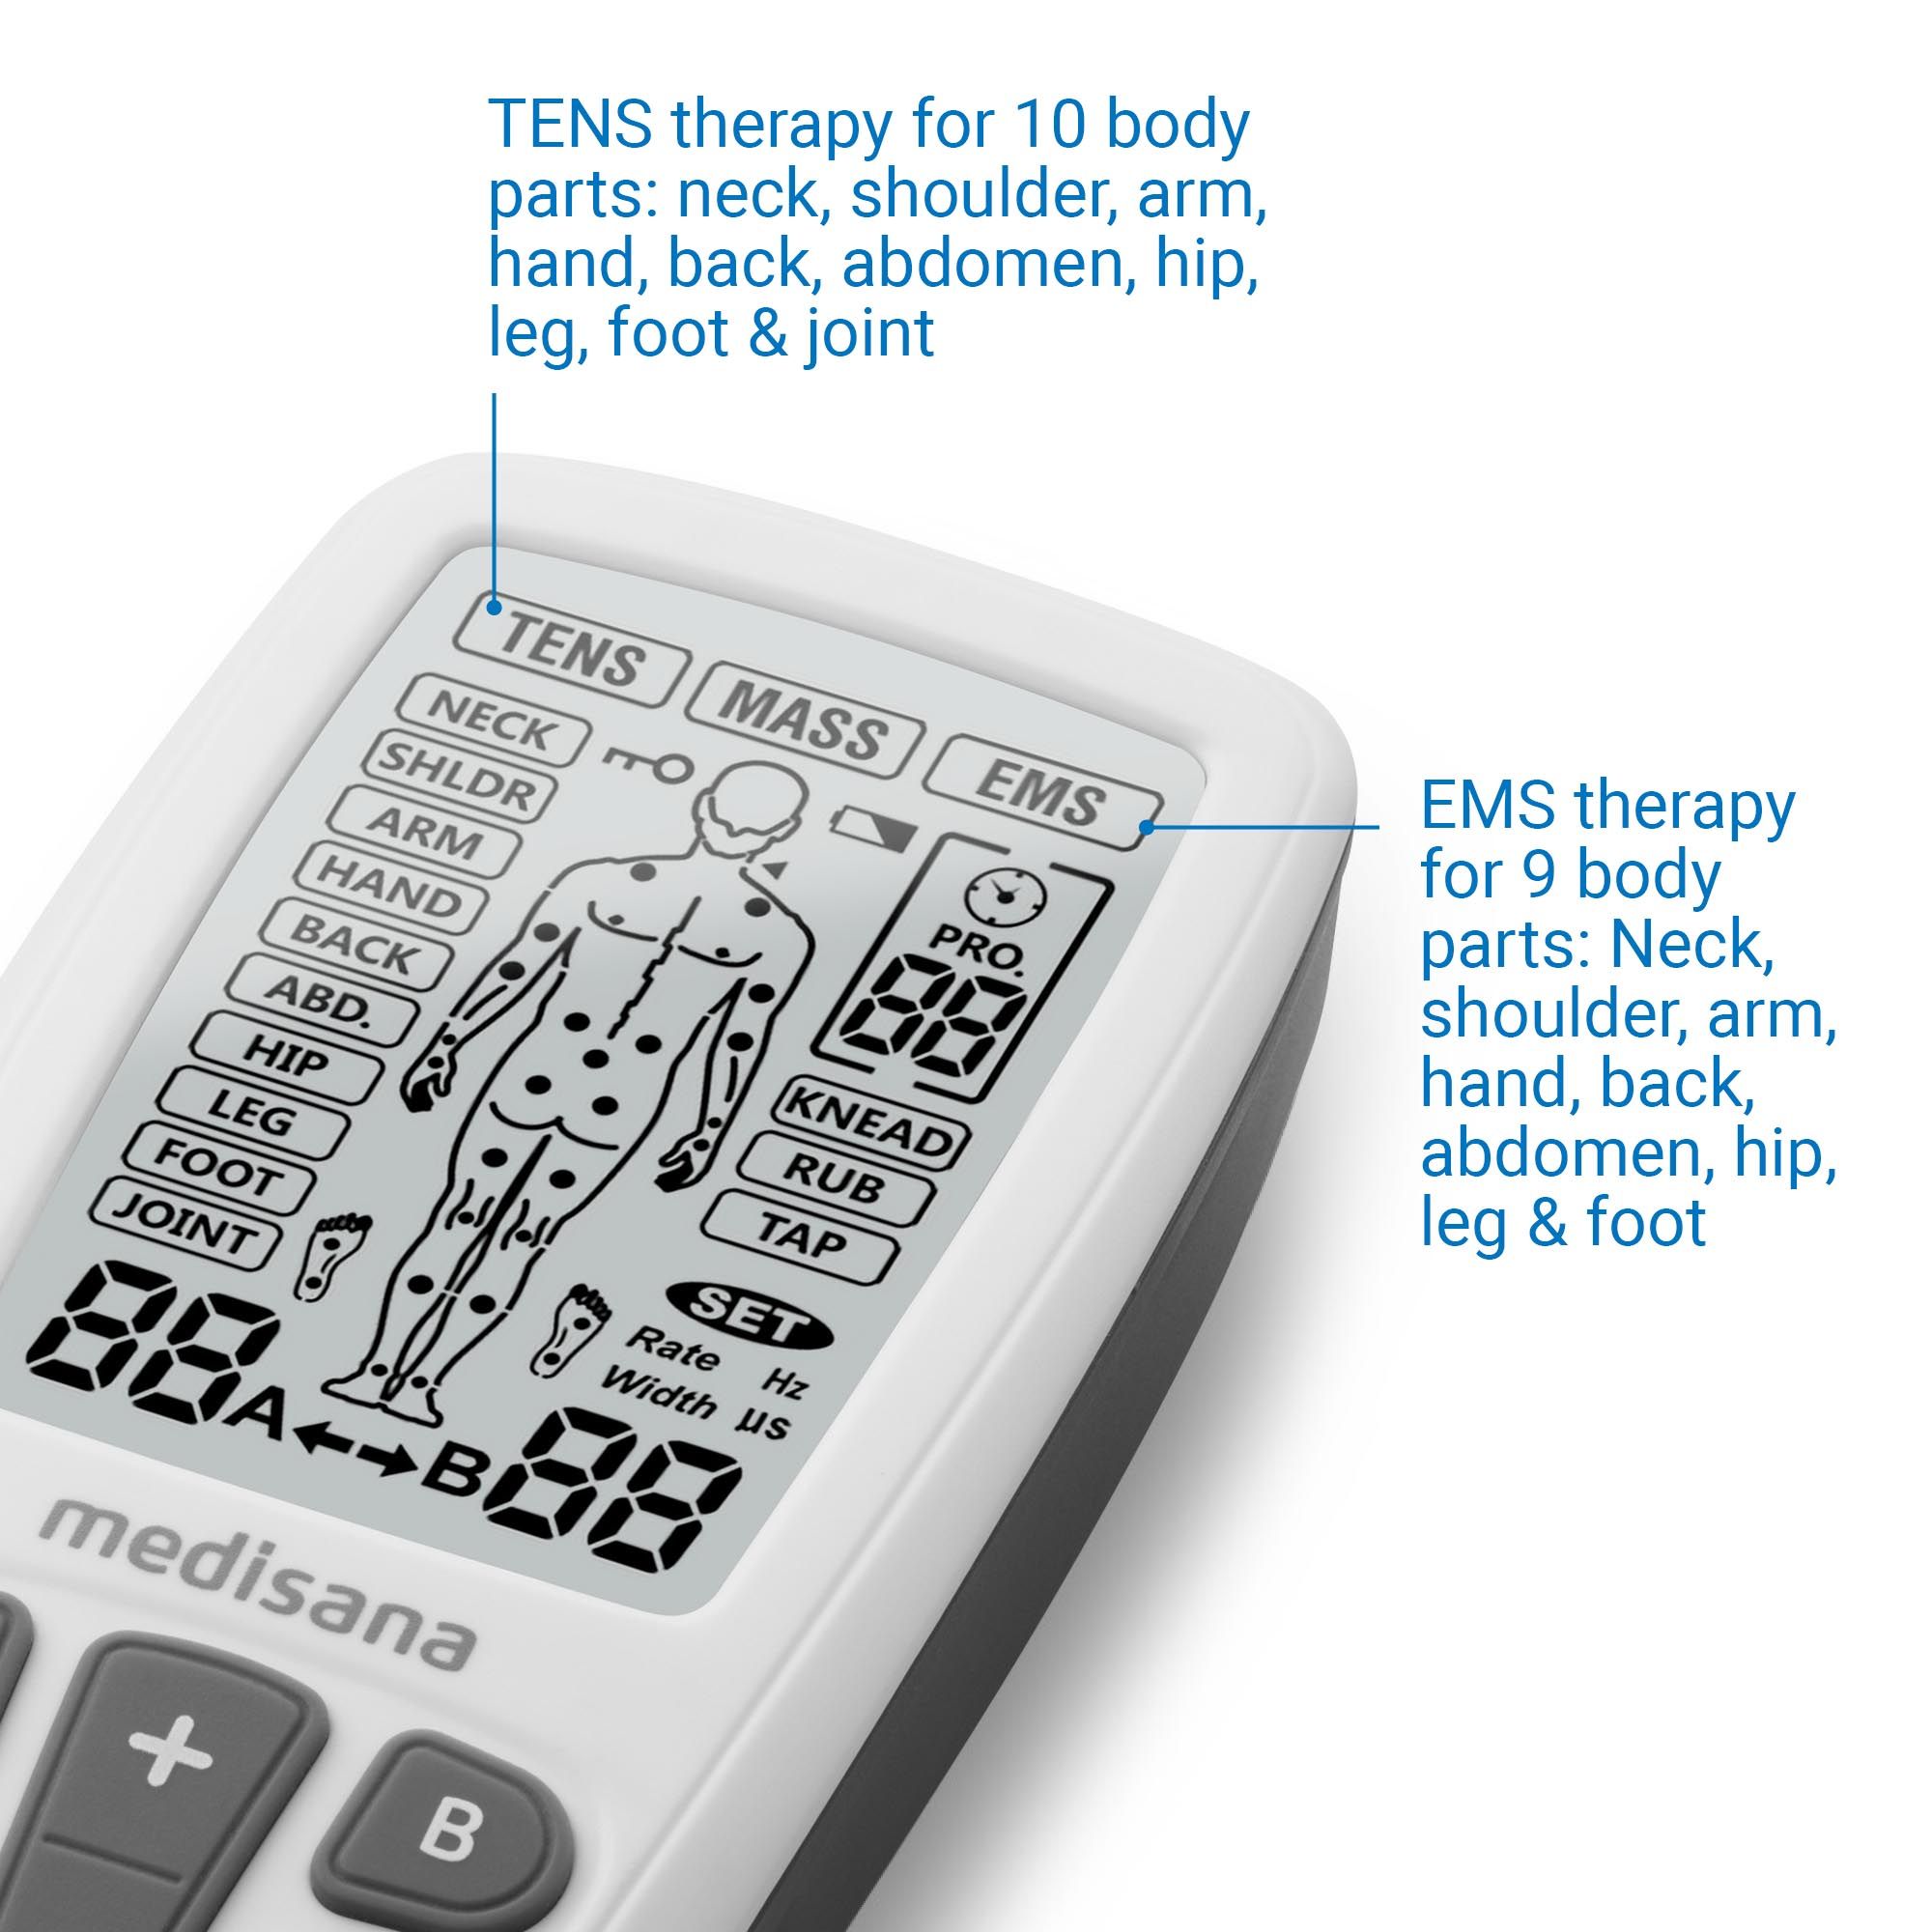 medisana TT 200 | TENS Gerät | EMS Reizstromgerät | dient der Schmerzlinderung